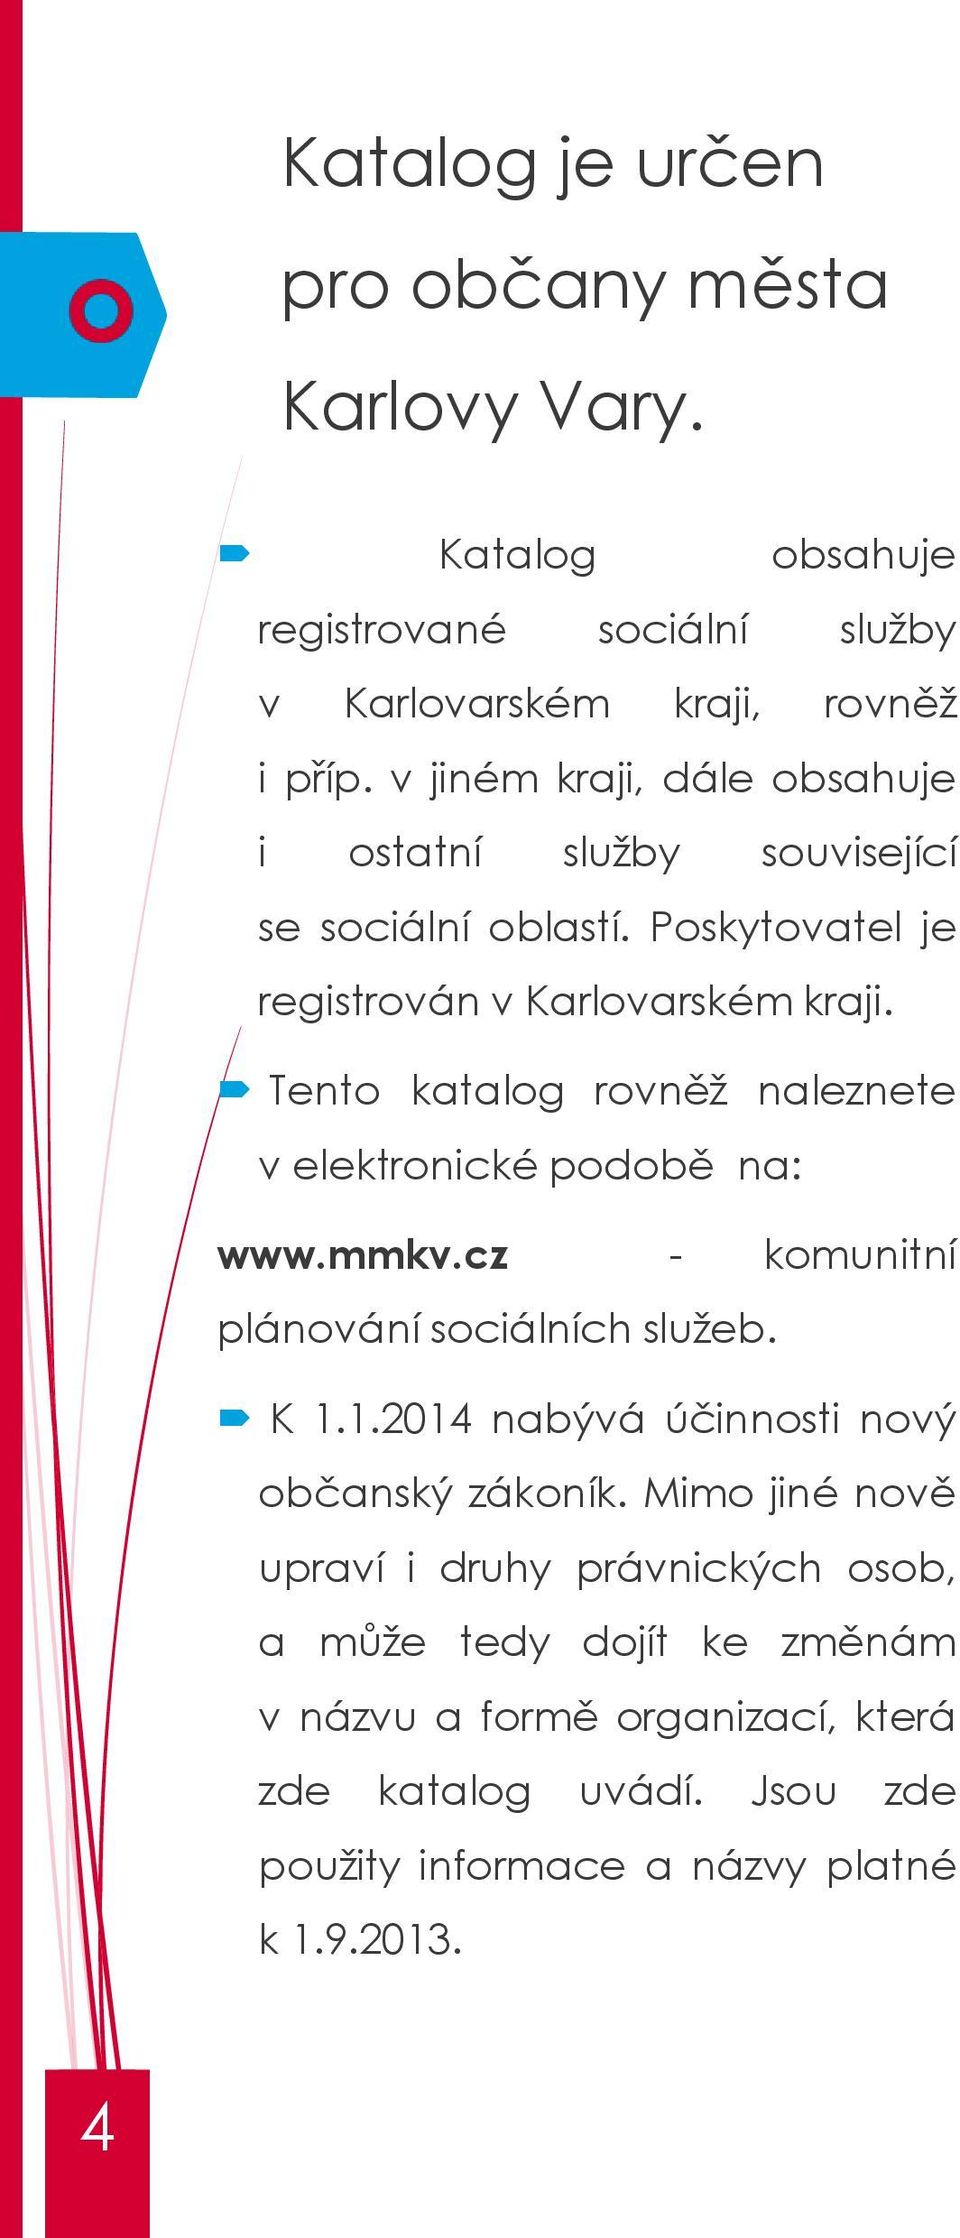 Tento katalog rovněž naleznete v elektronické podobě na: www.mmkv.cz - komunitní plánování sociálních služeb. K 1.